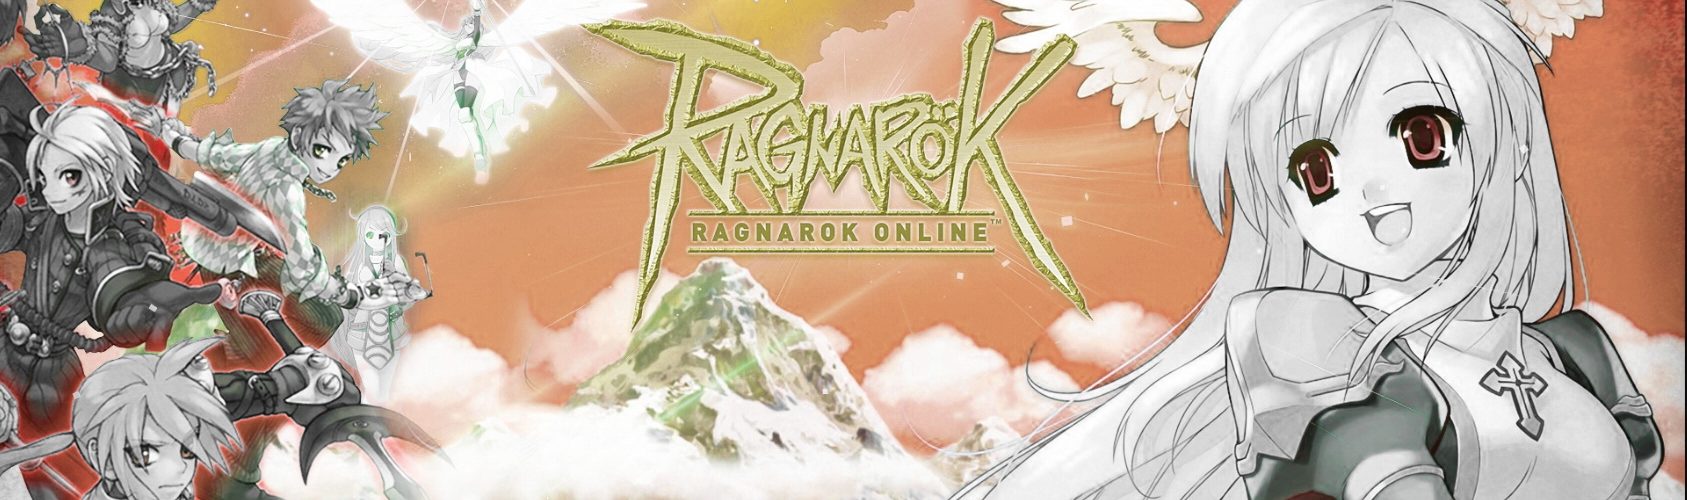 Hackers attacked Ragnarok Online